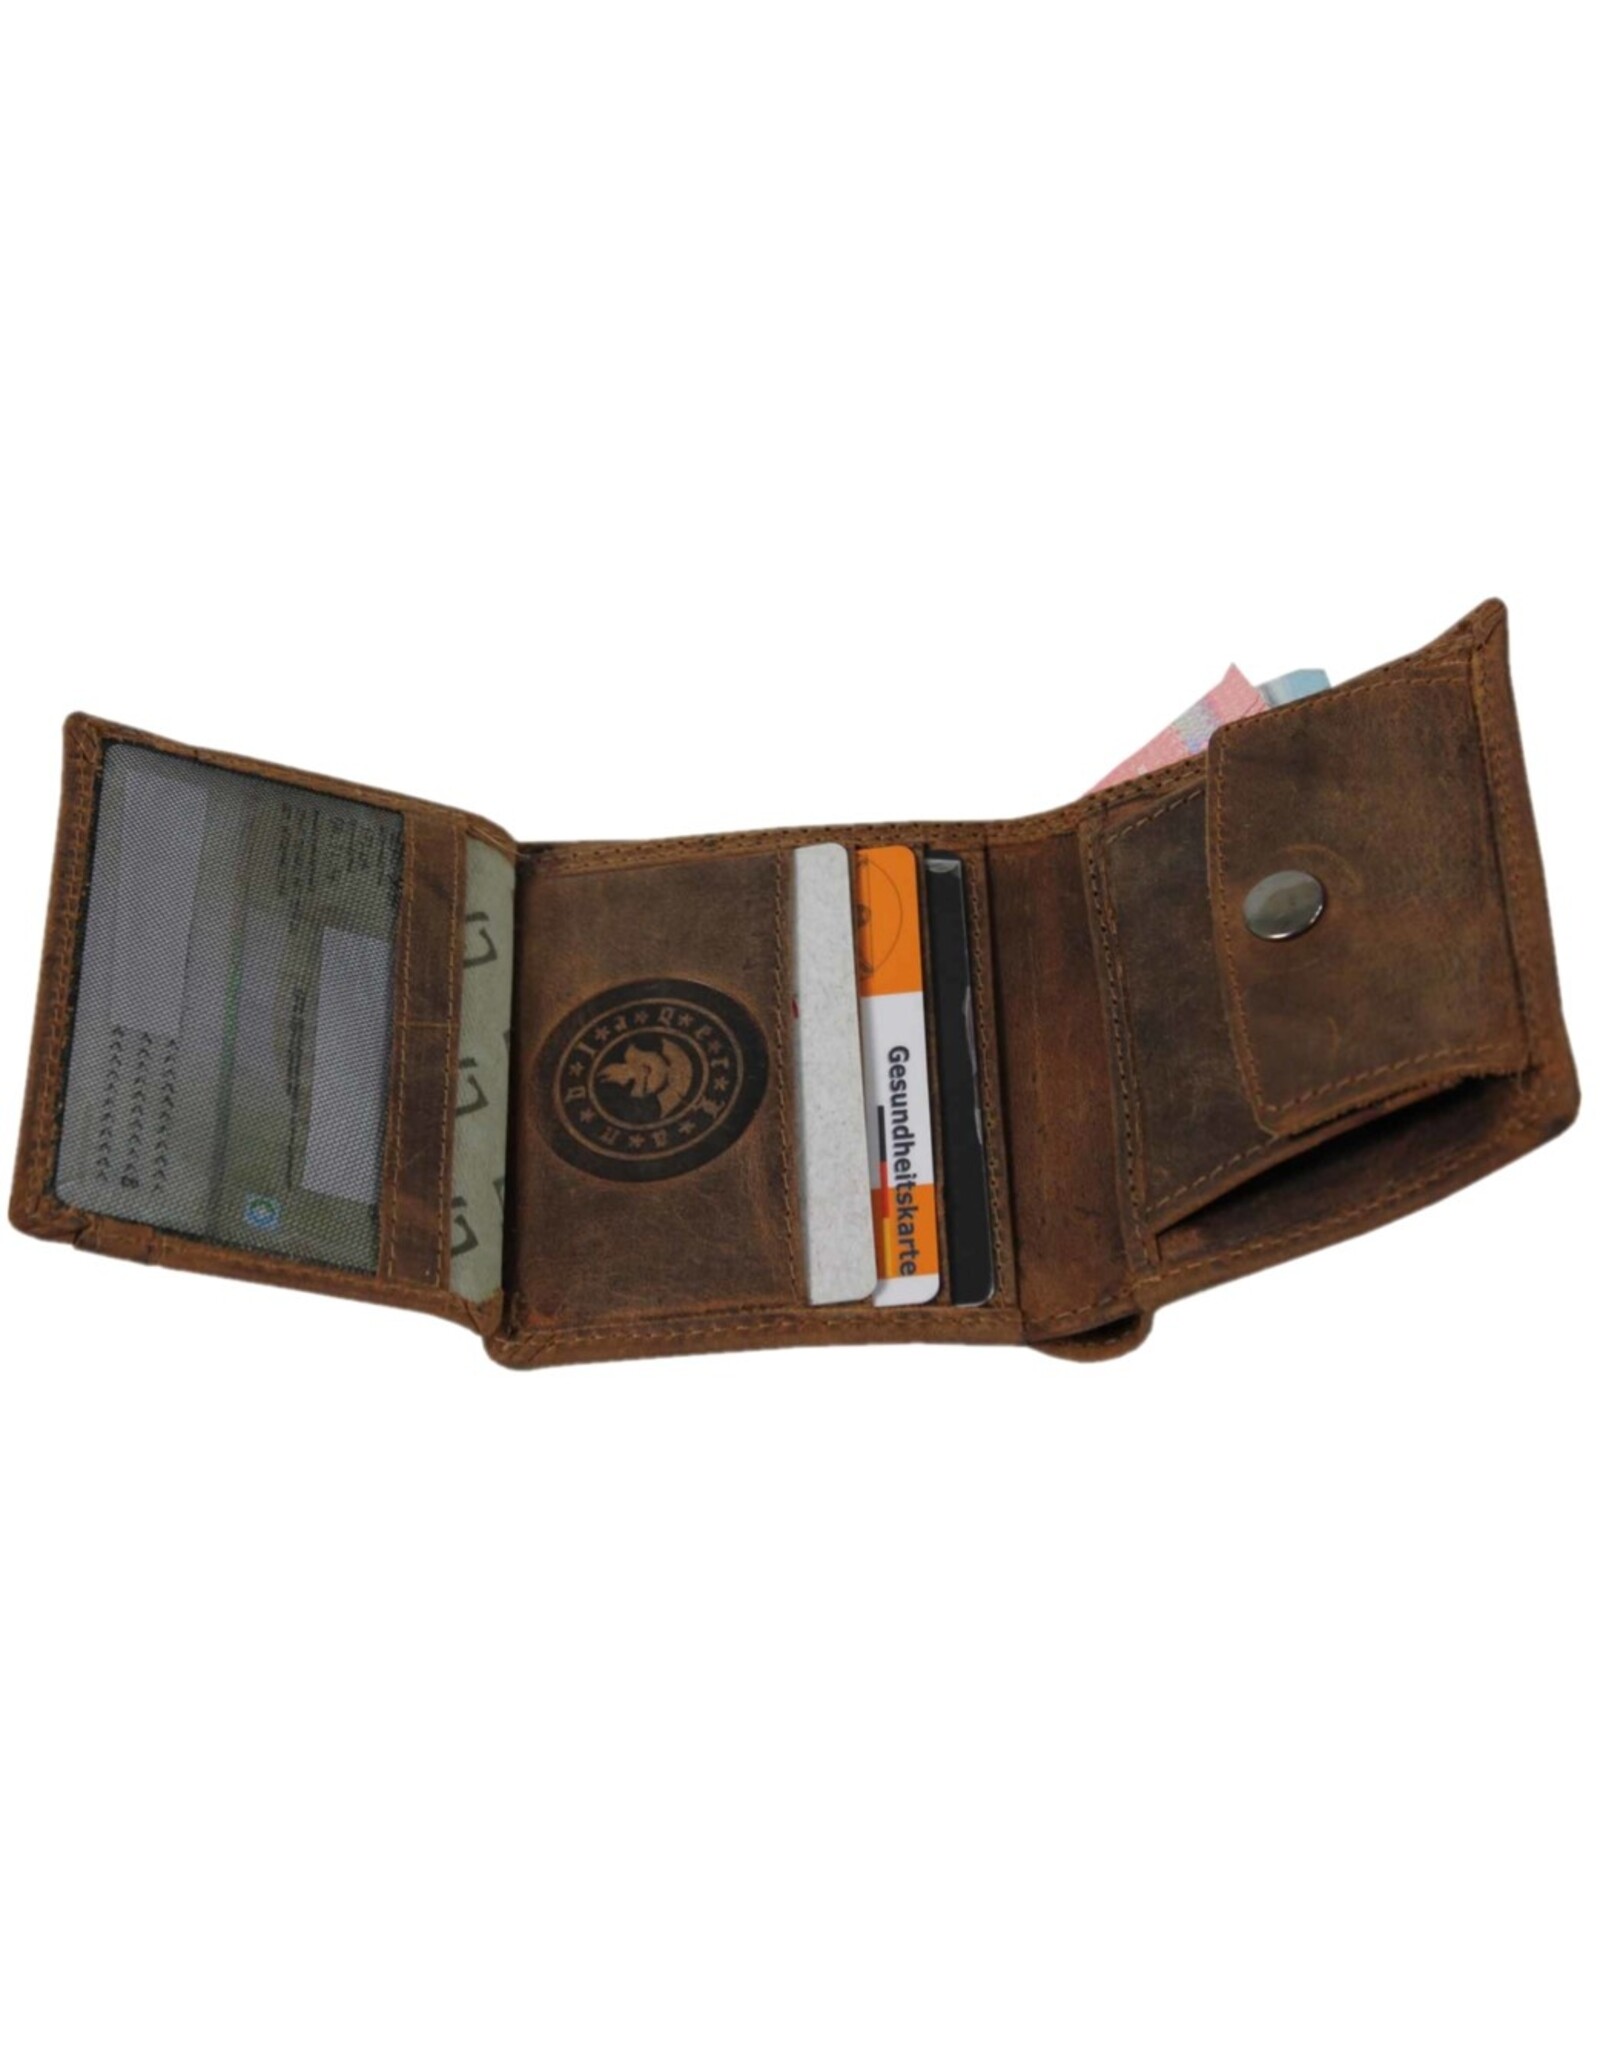 LandLeder Leather Wallets - LandLeder Combi wallet BULL & SNAKE small